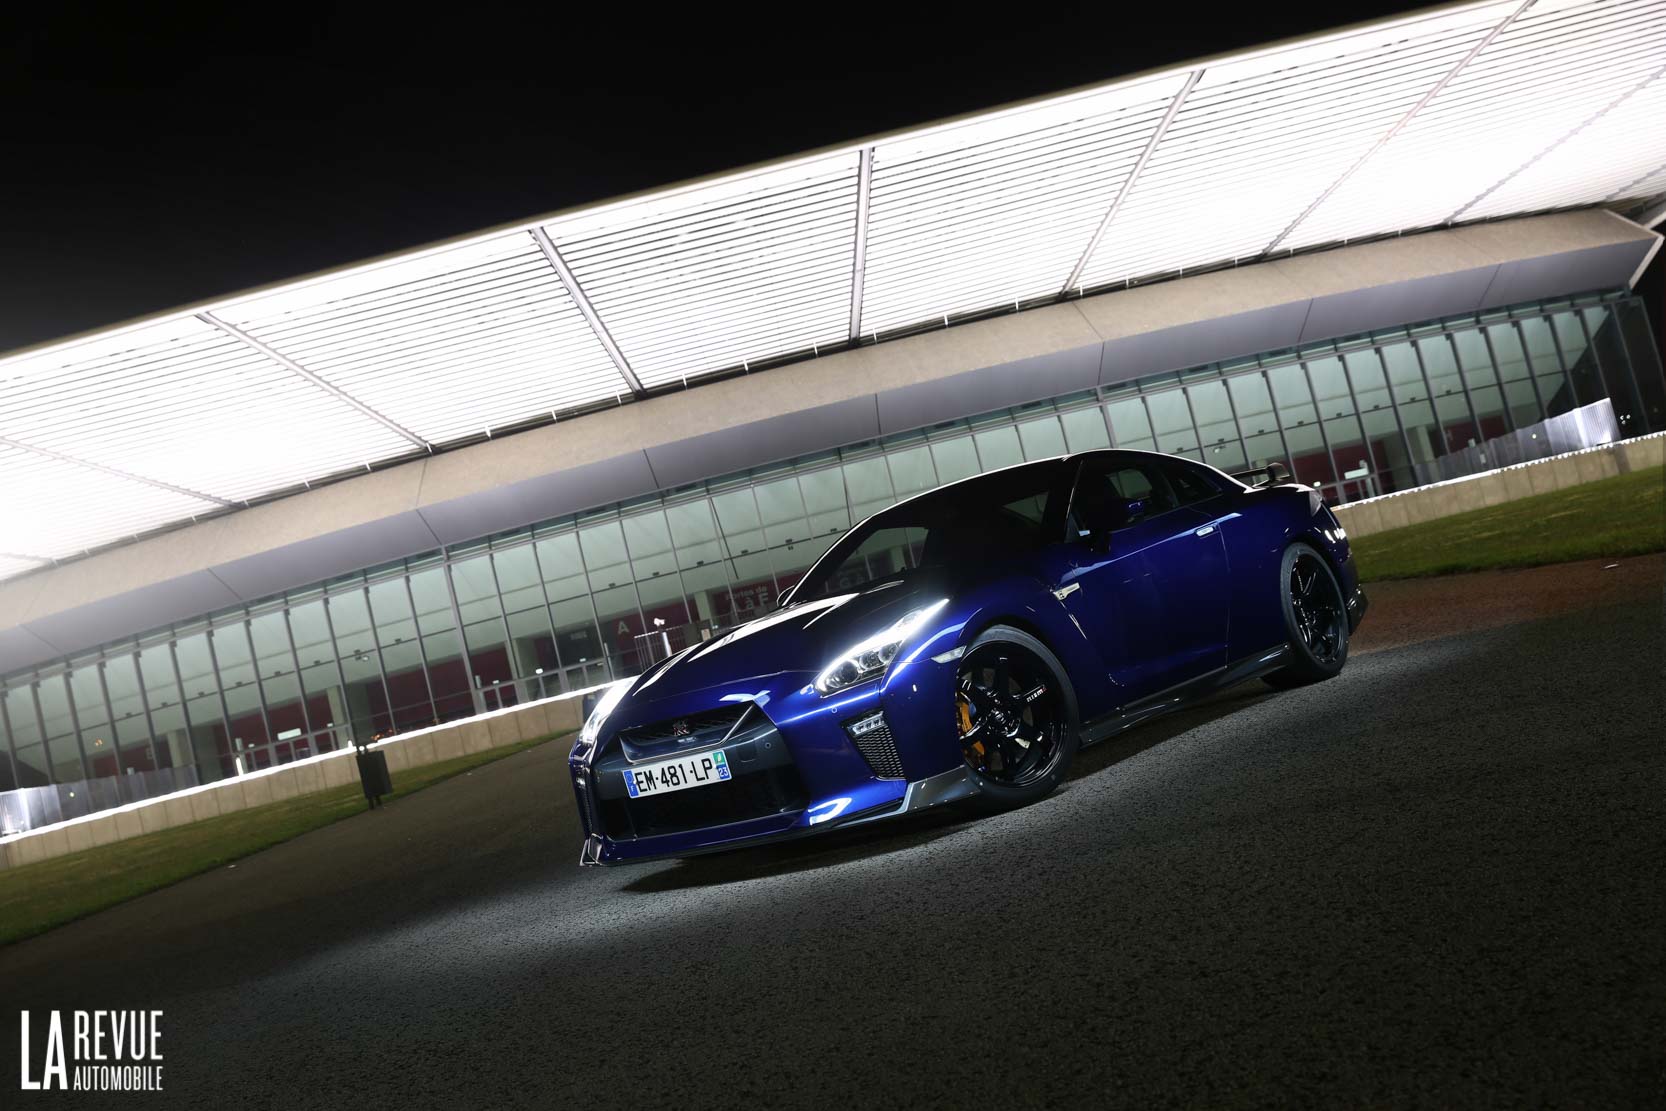 Image principale de l'actu: Essai Nissan GTR Track edition : l'aboutissement